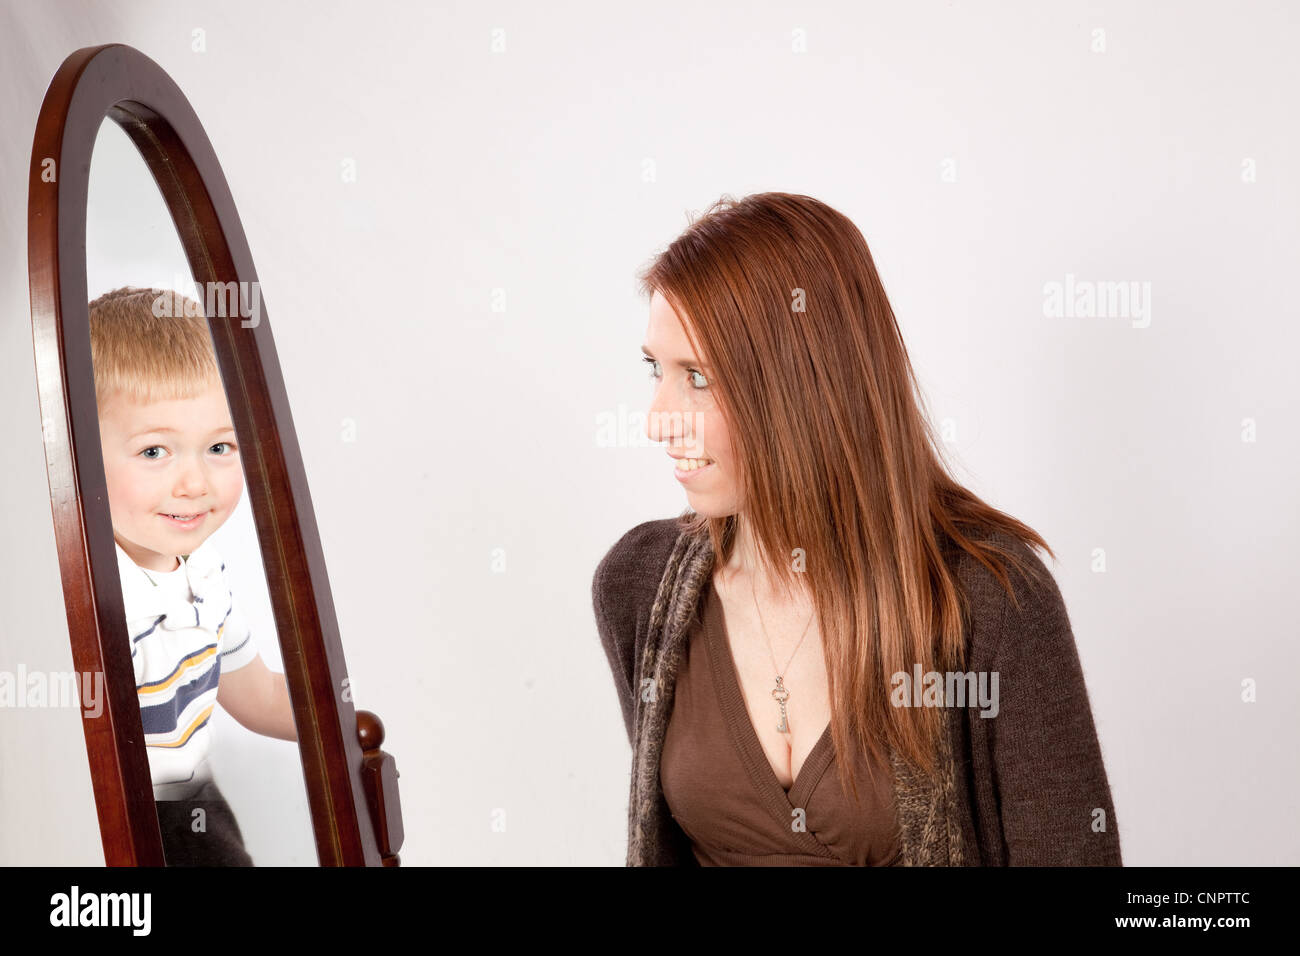 Sehr schön, Mutter in einen Spiegel schauen und sehen ihren blonden Sohn anstatt ihr Bild Stockfoto